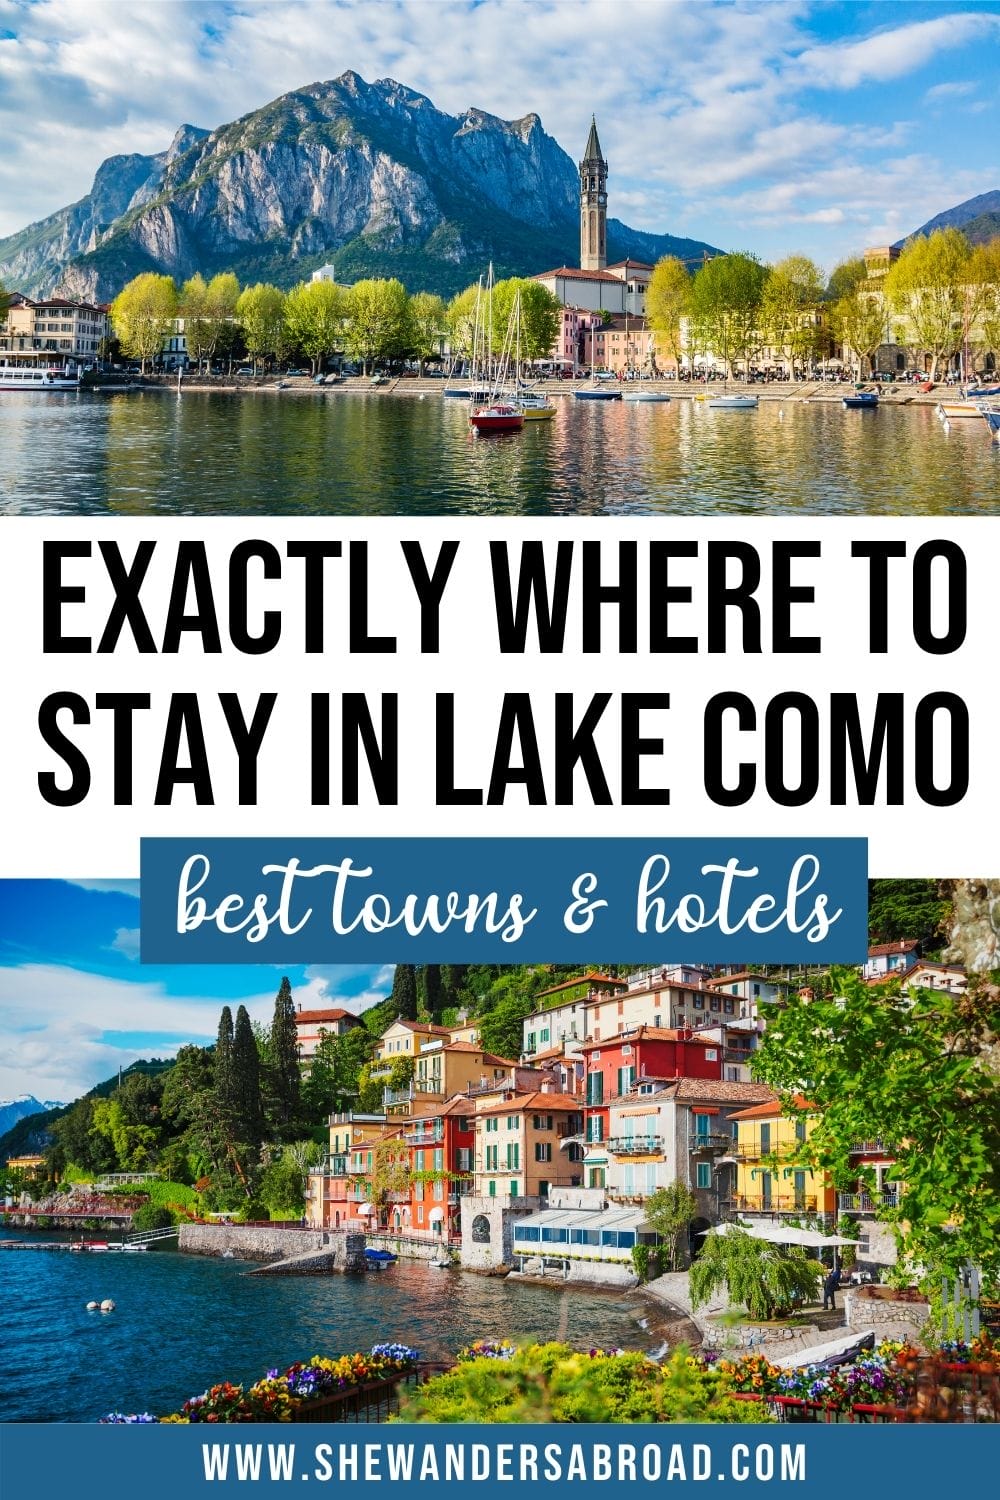 최고의 장소는 코모 호수에 머물:최고의 도시 호텔